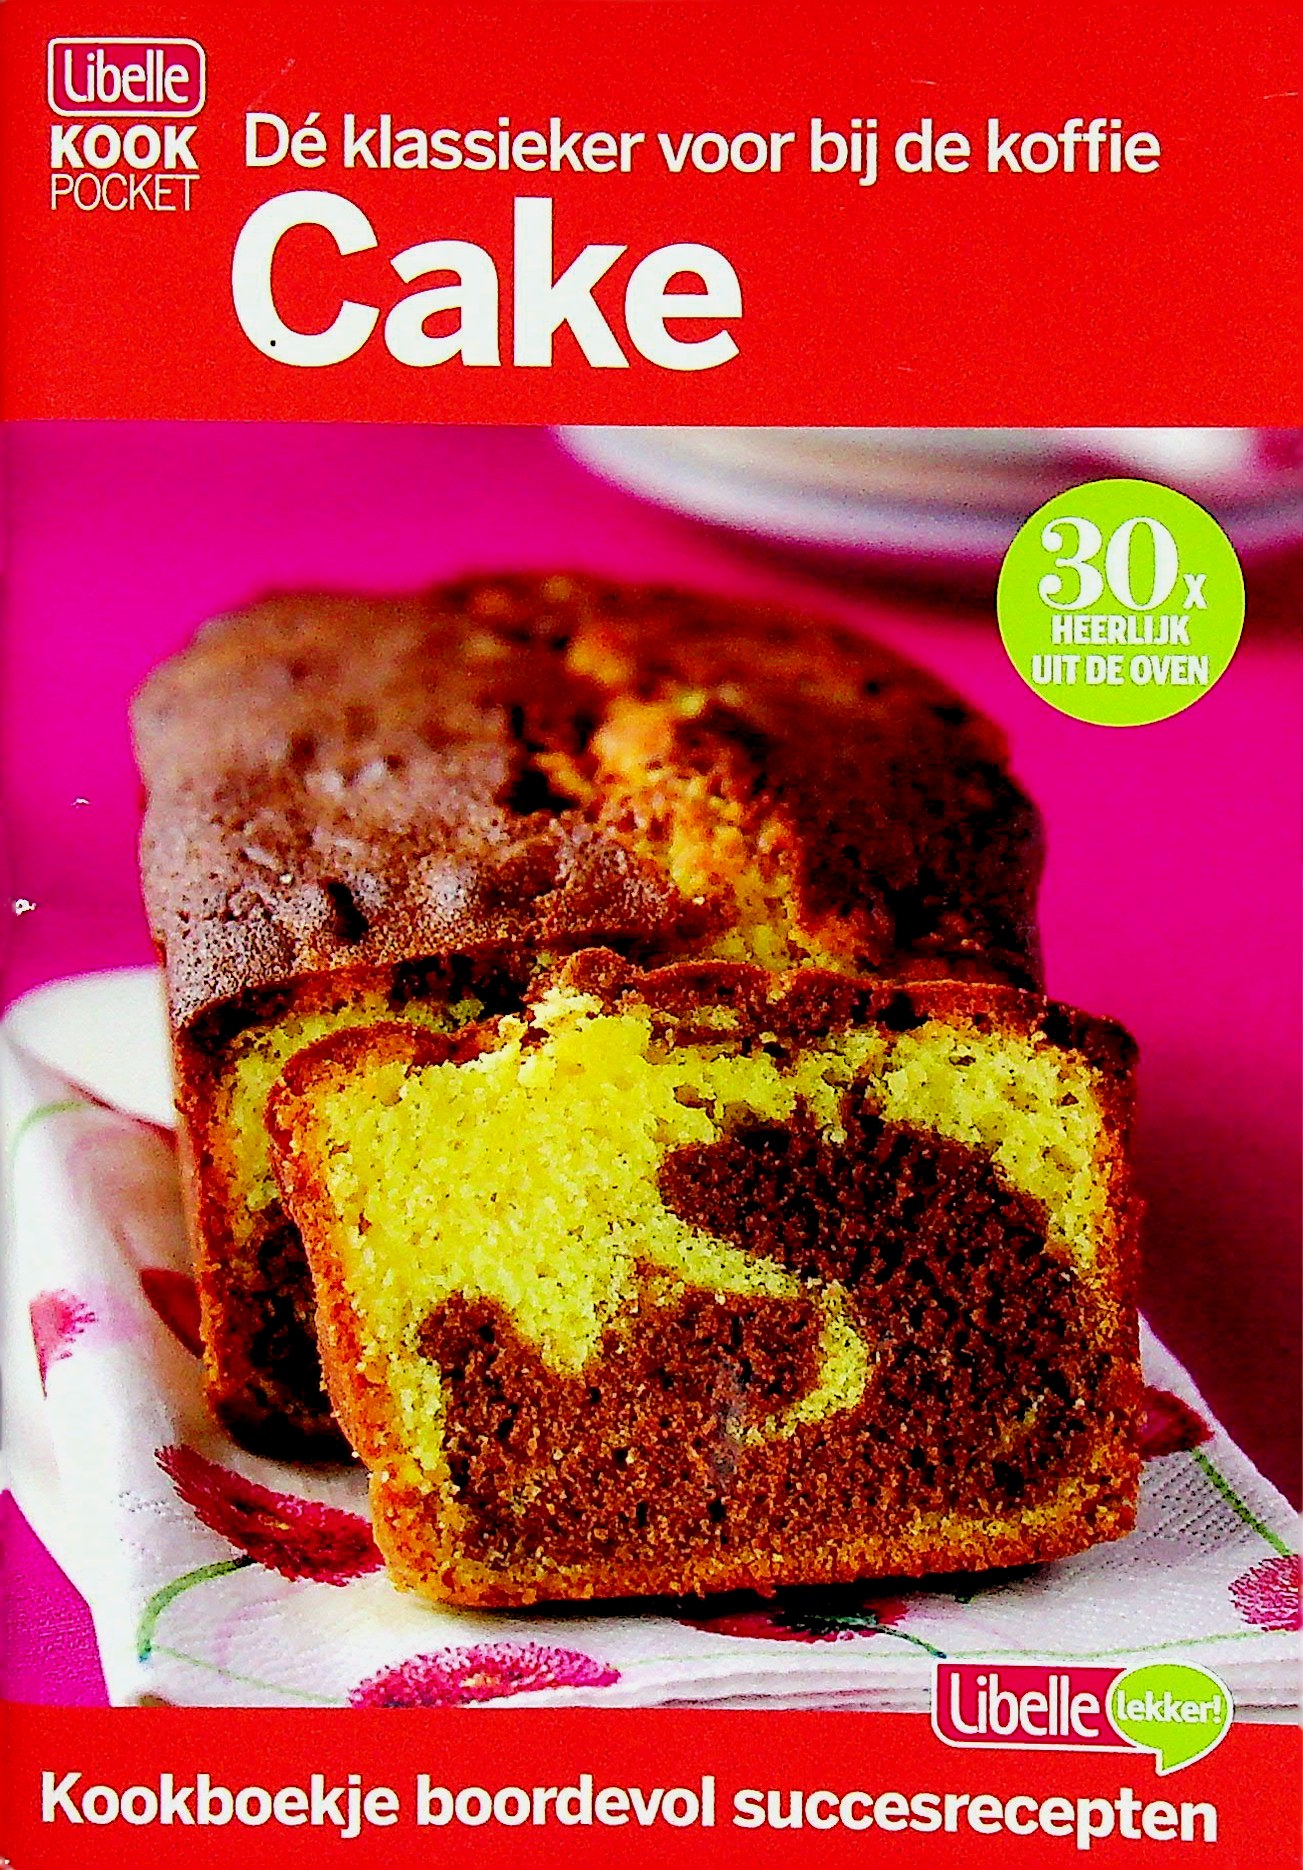 Cake - libelle 2013 kookboek